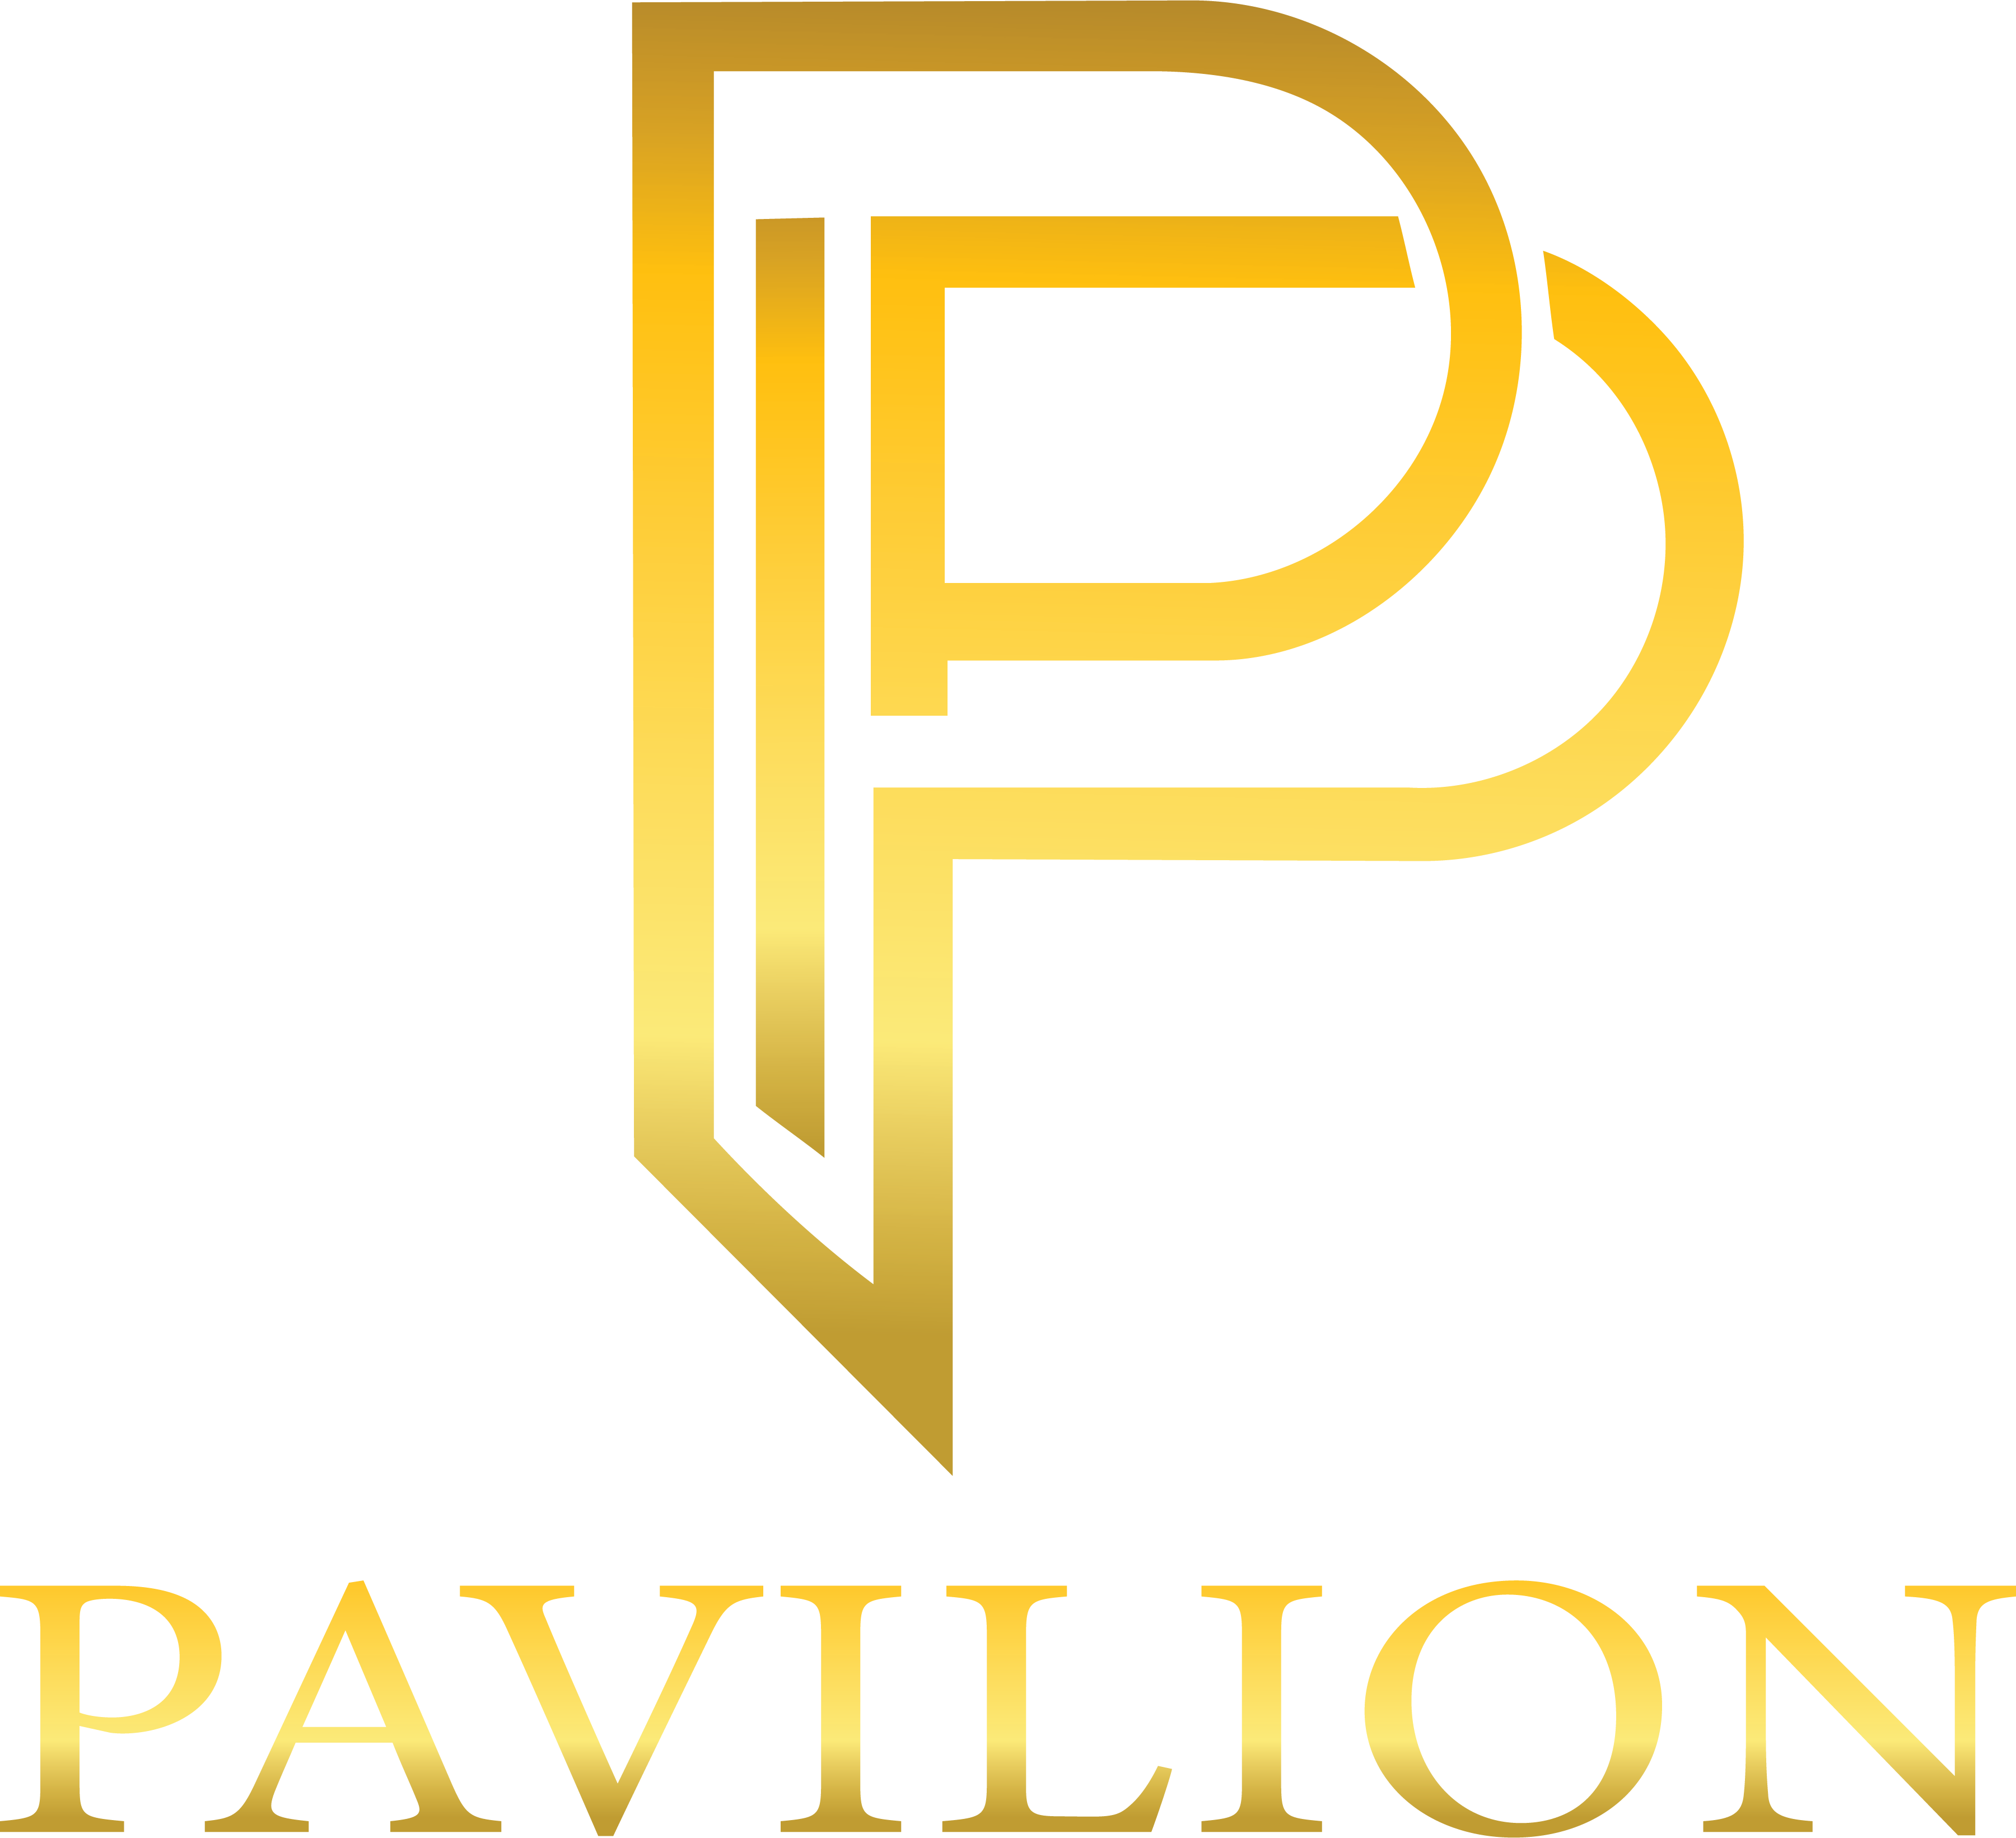 Pavilion Healthcare